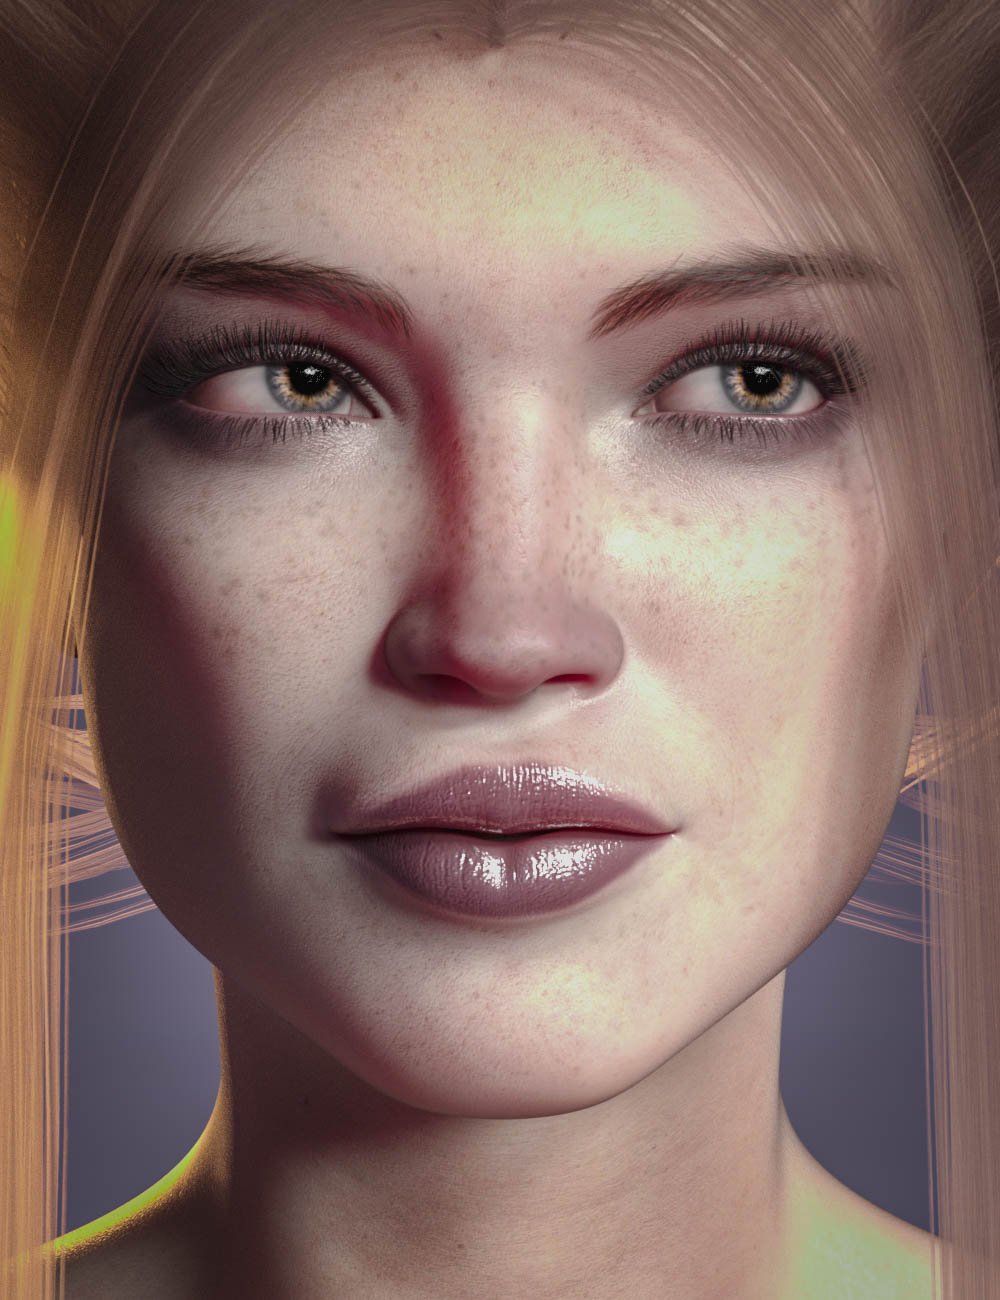 CB Ryilee HD for Genesis 8.1 Females by: CynderBlue, 3D Models by Daz 3D